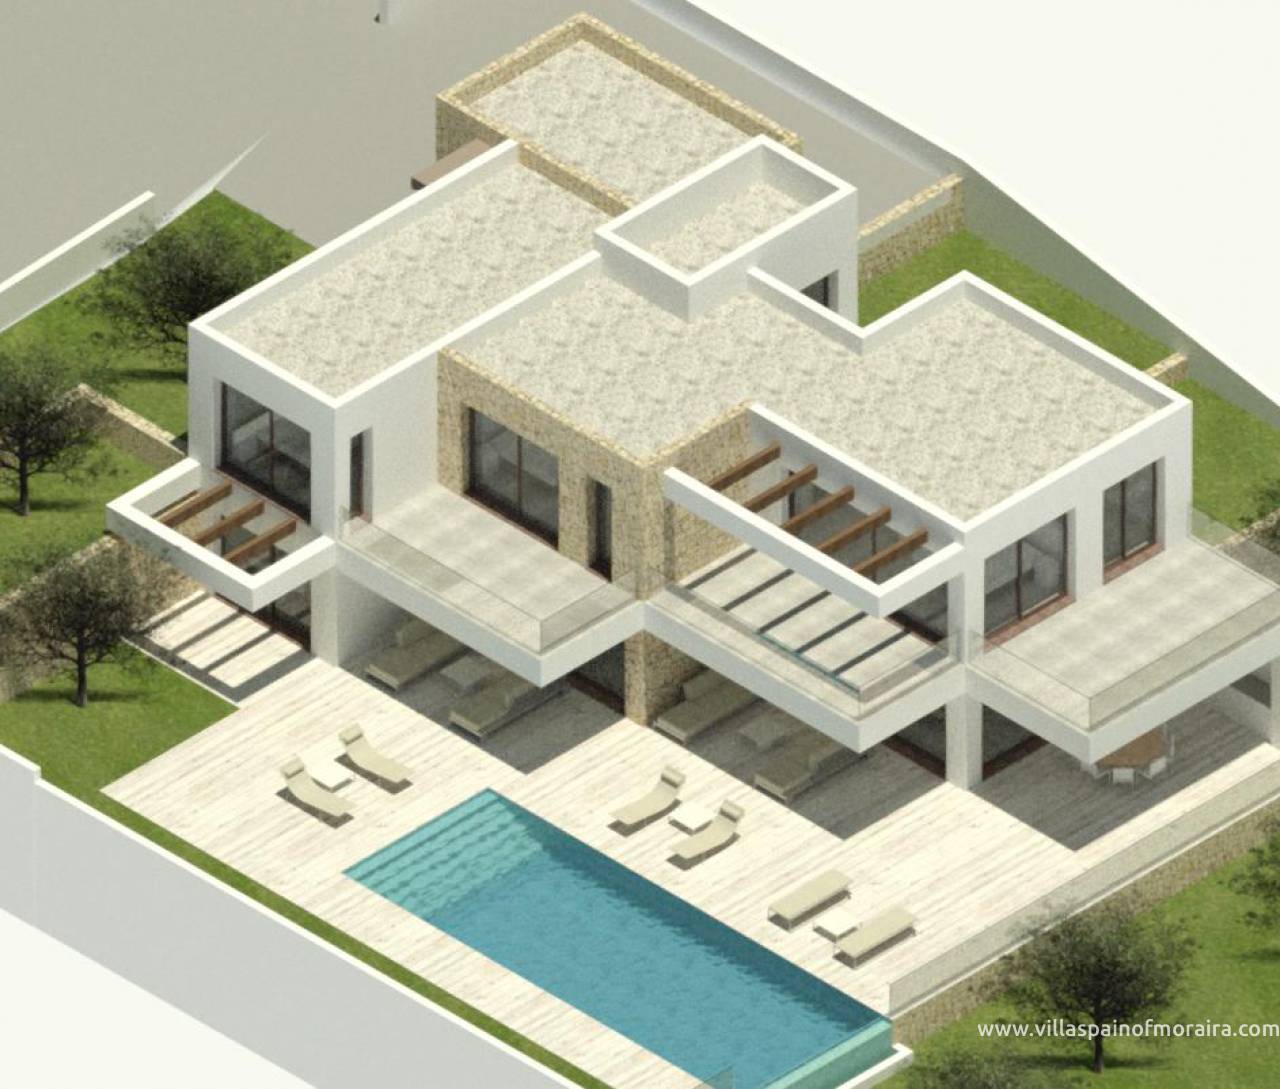 New villa in Moraira for sale